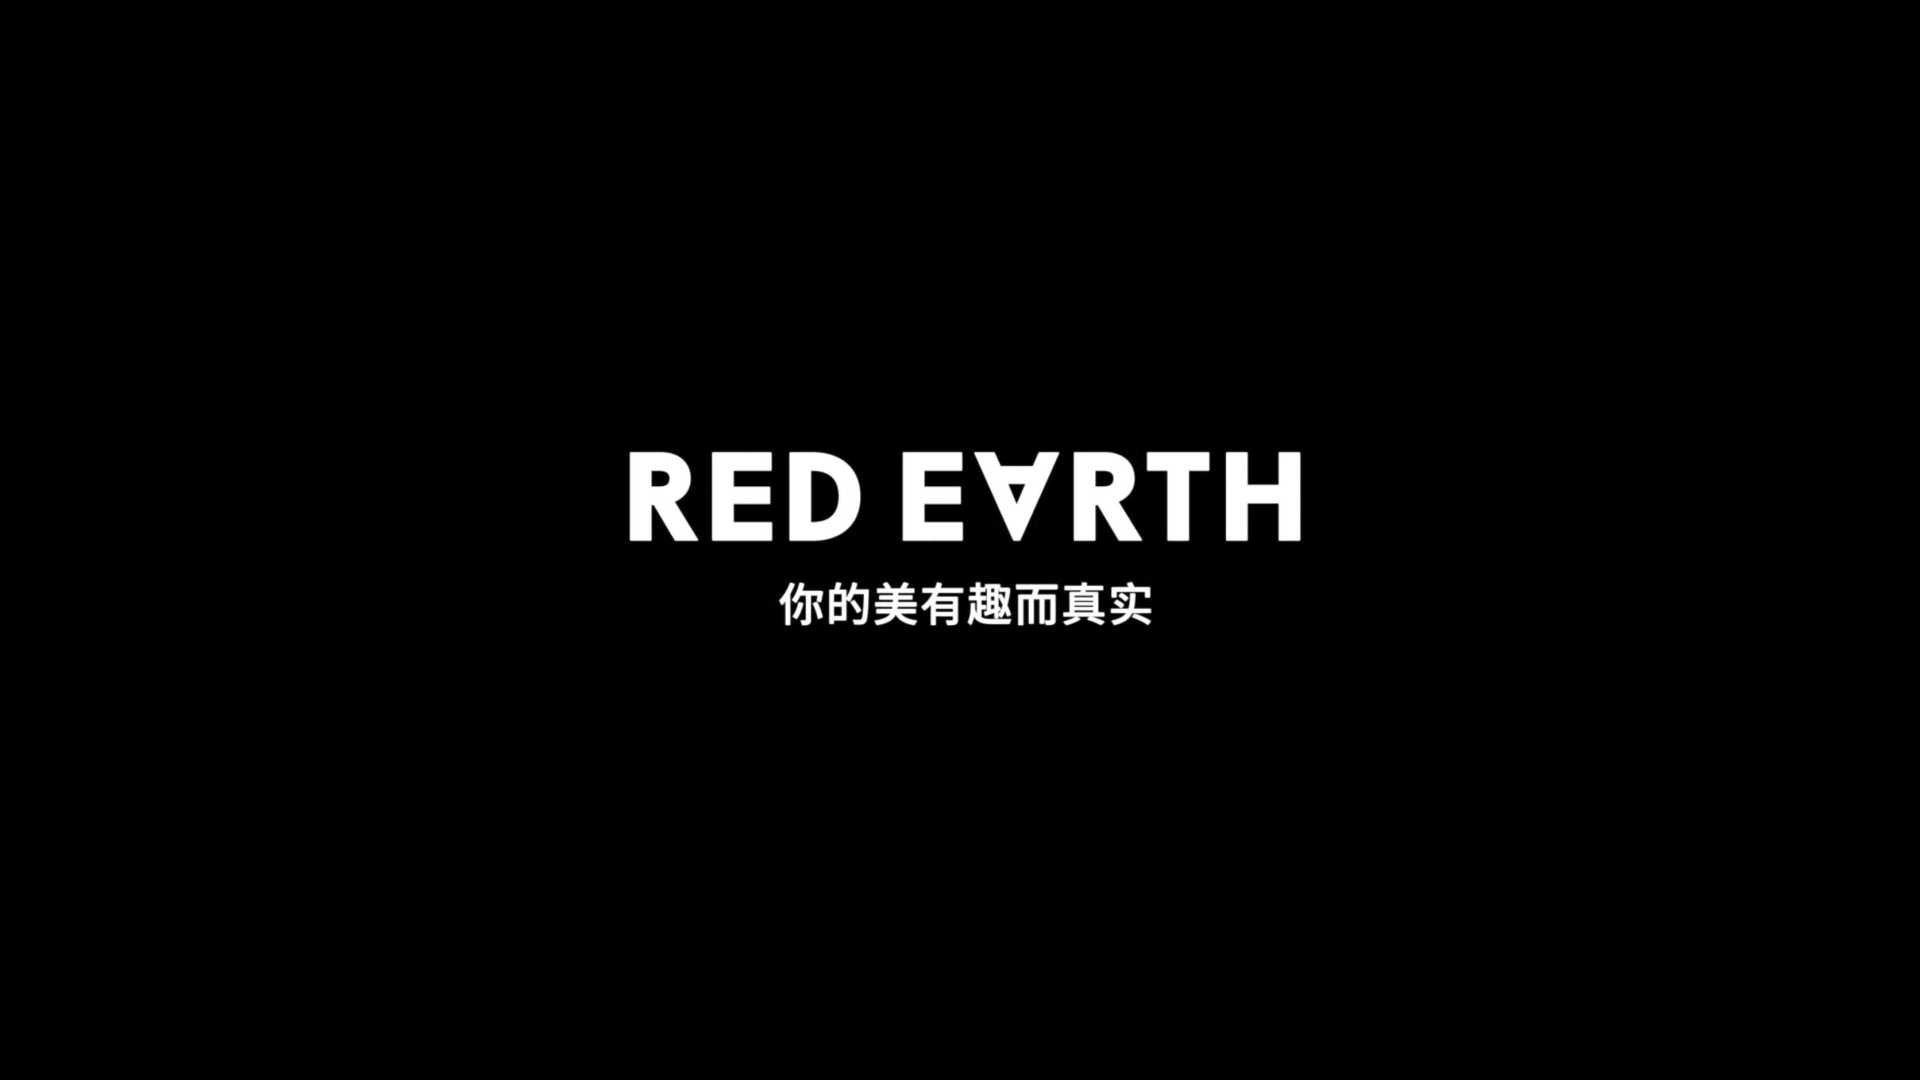 RED EARTH红地球 三角眉笔